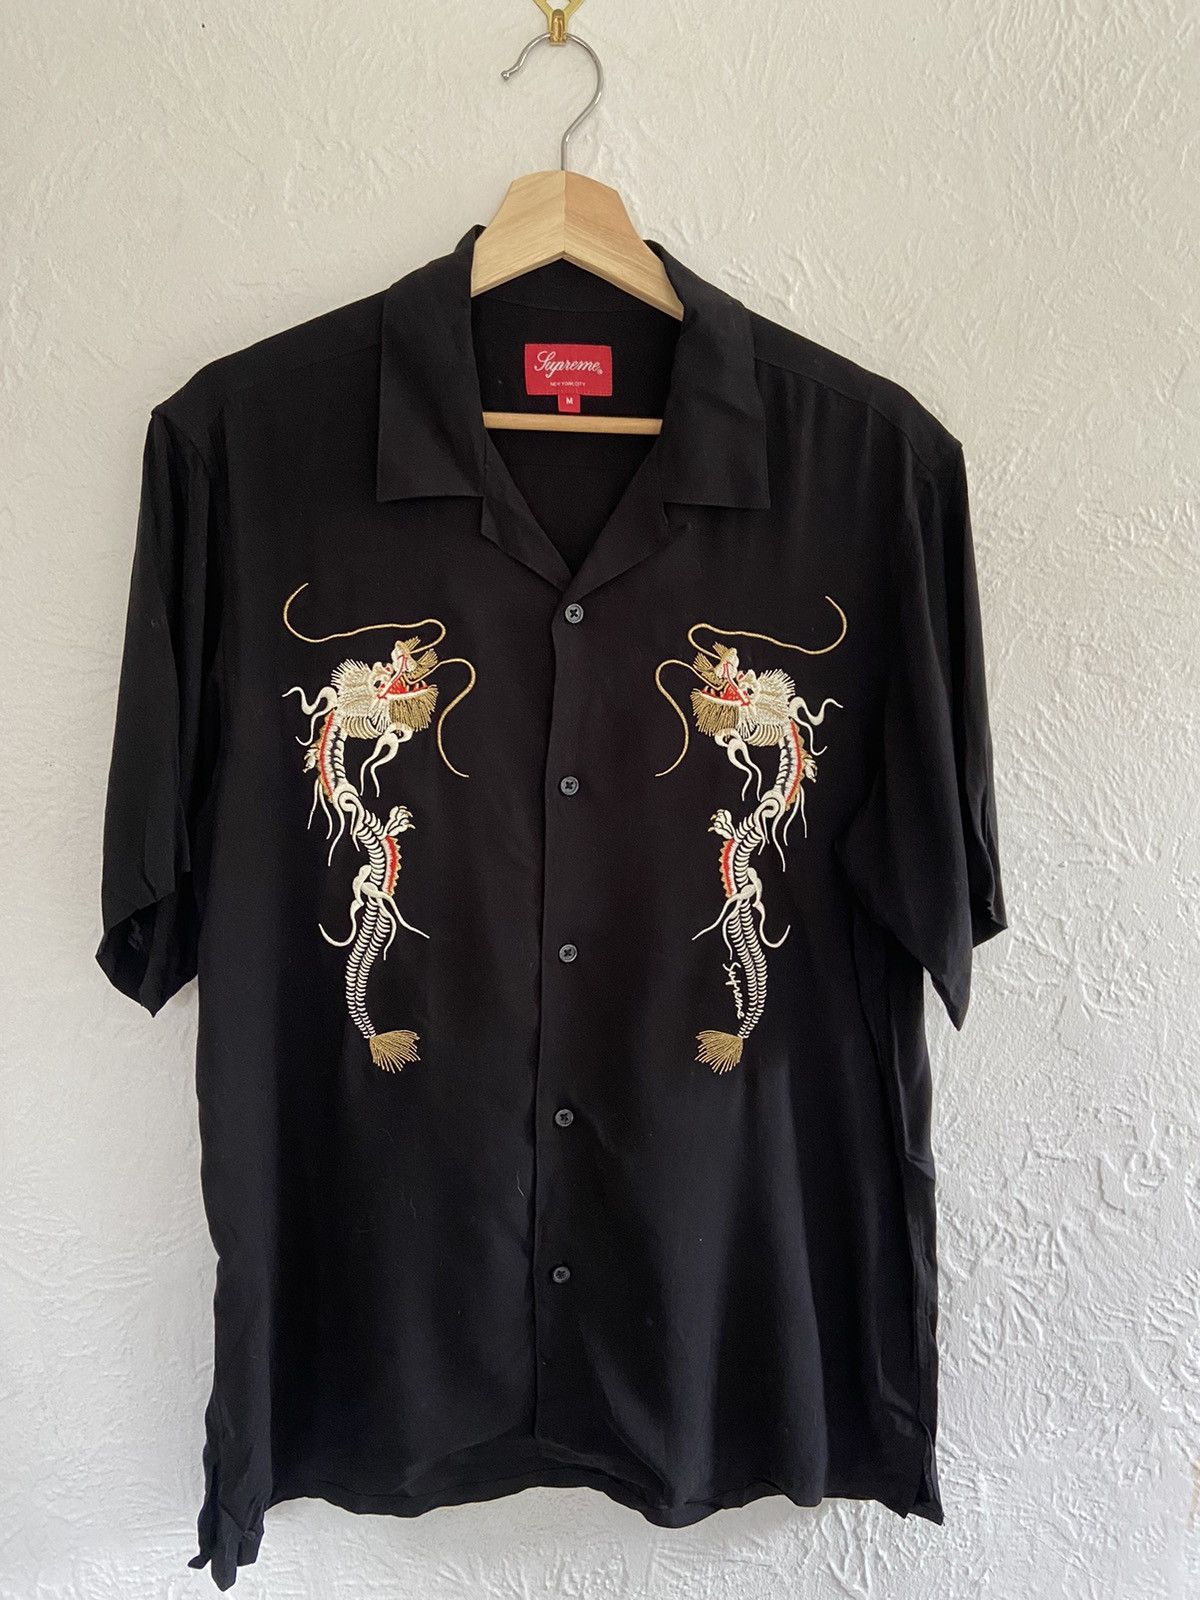 Supreme Dragon Rayon Shirt | Grailed